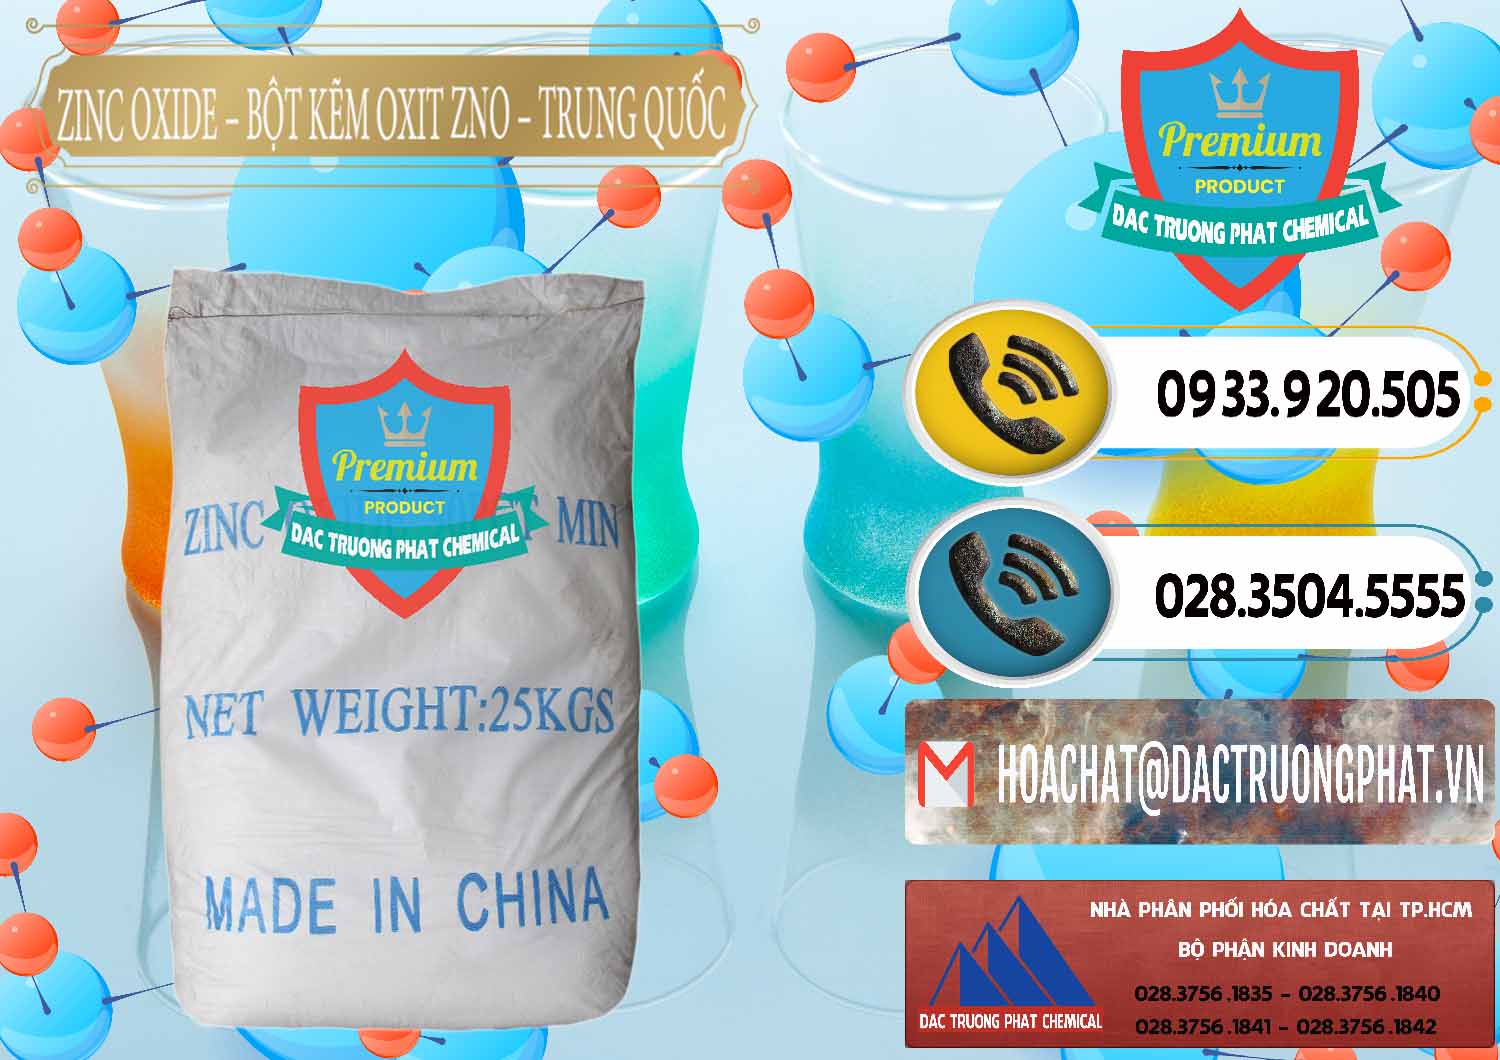 Nơi bán ( cung cấp ) Zinc Oxide - Bột Kẽm Oxit ZNO Trung Quốc China - 0182 - Cty nhập khẩu _ phân phối hóa chất tại TP.HCM - hoachatdetnhuom.vn